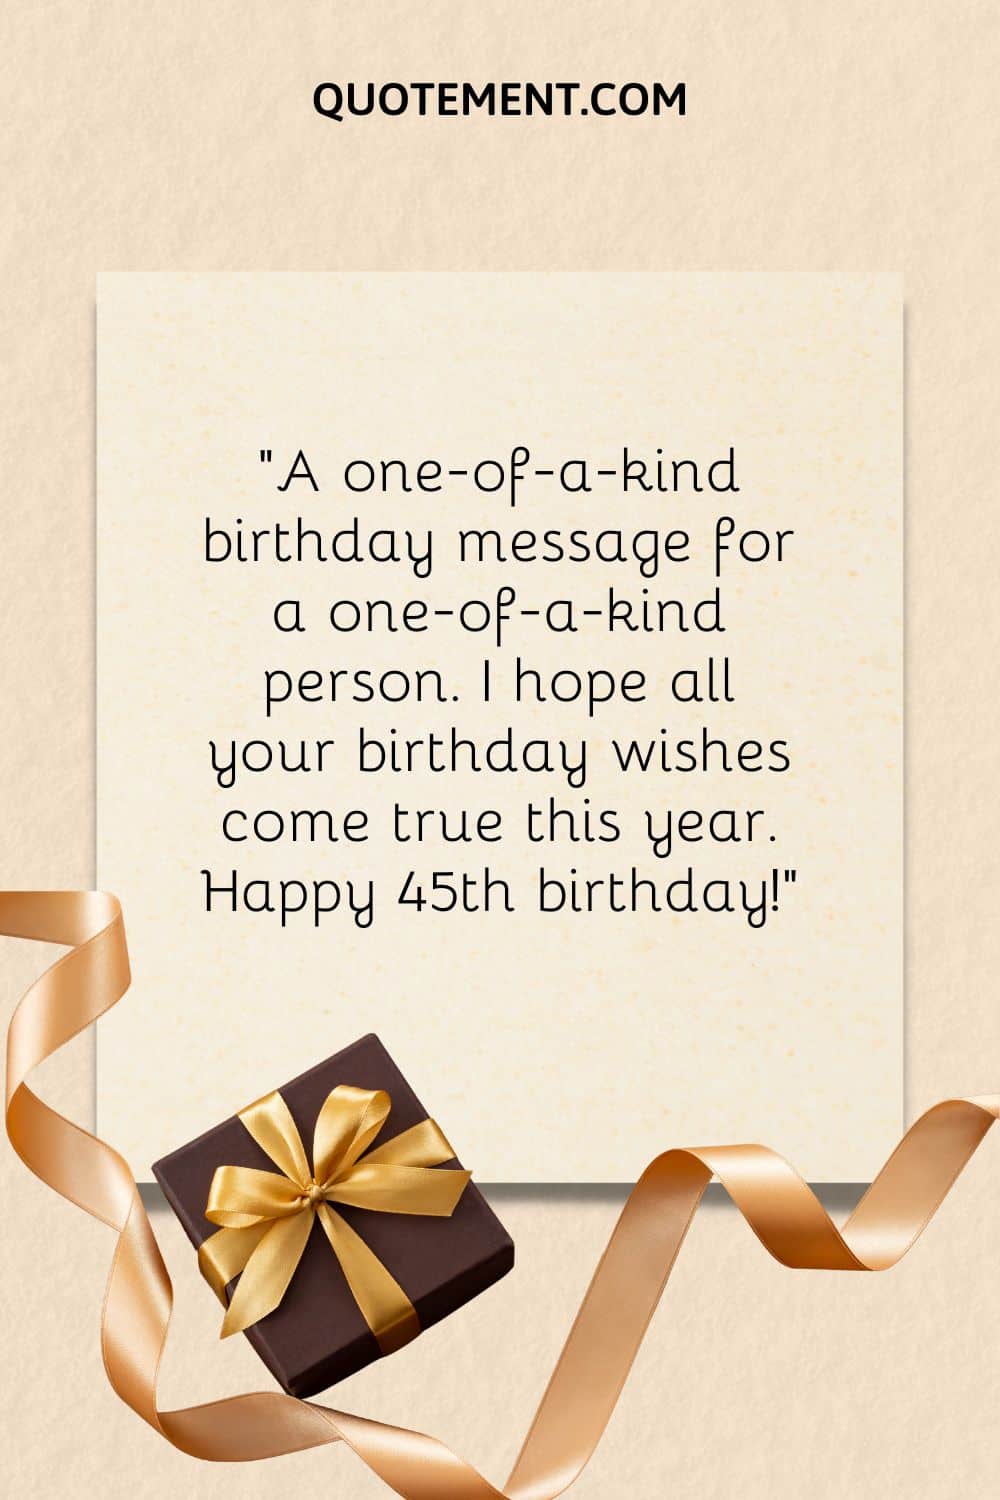 "Un mensaje de cumpleaños único para una persona única. Espero que todos tus deseos de cumpleaños se hagan realidad este año. Feliz 45 cumpleaños".